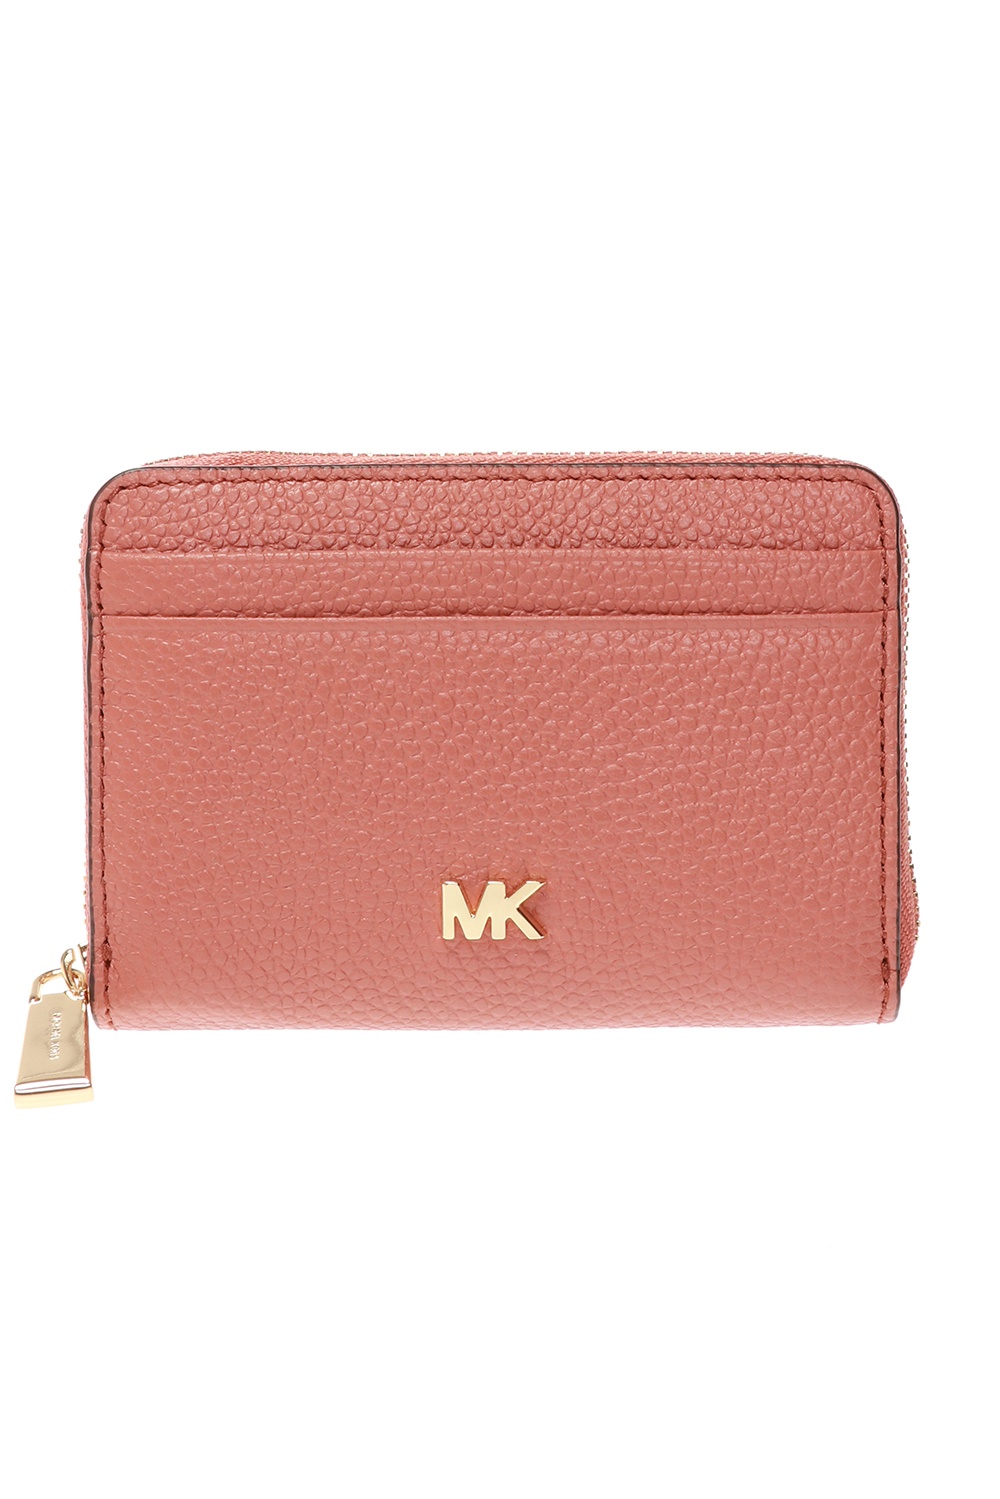 mk wallet singapore